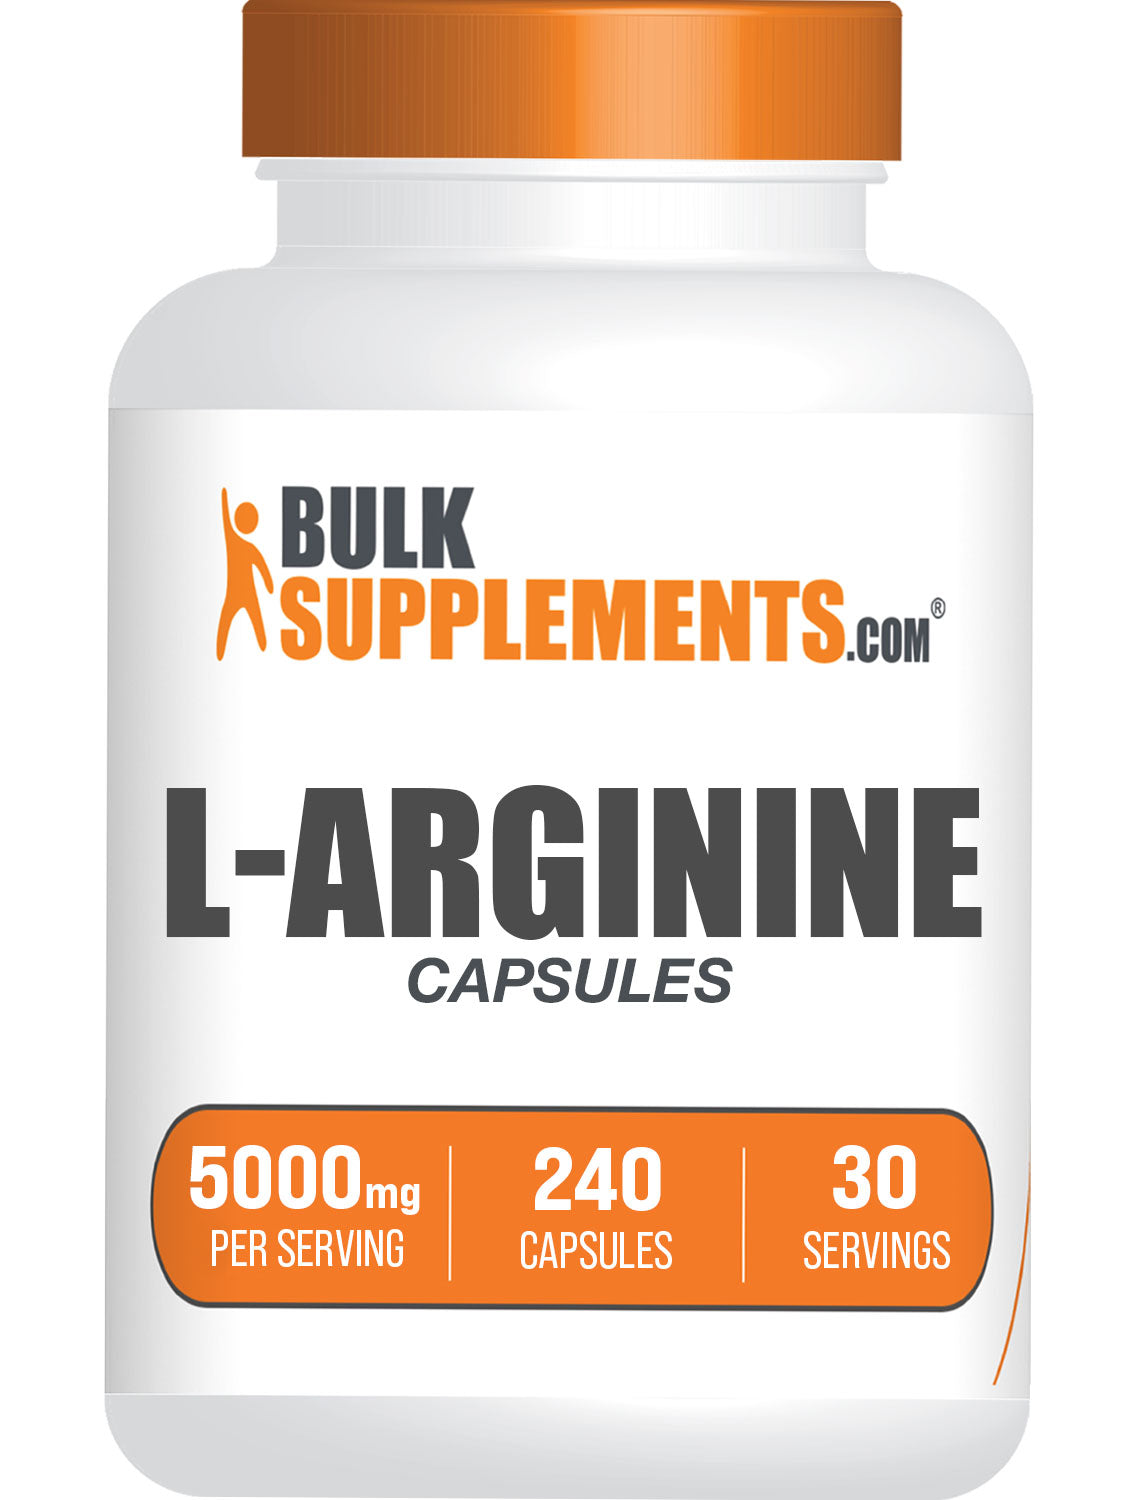 L-Arginine 240 ct Capsules bottle